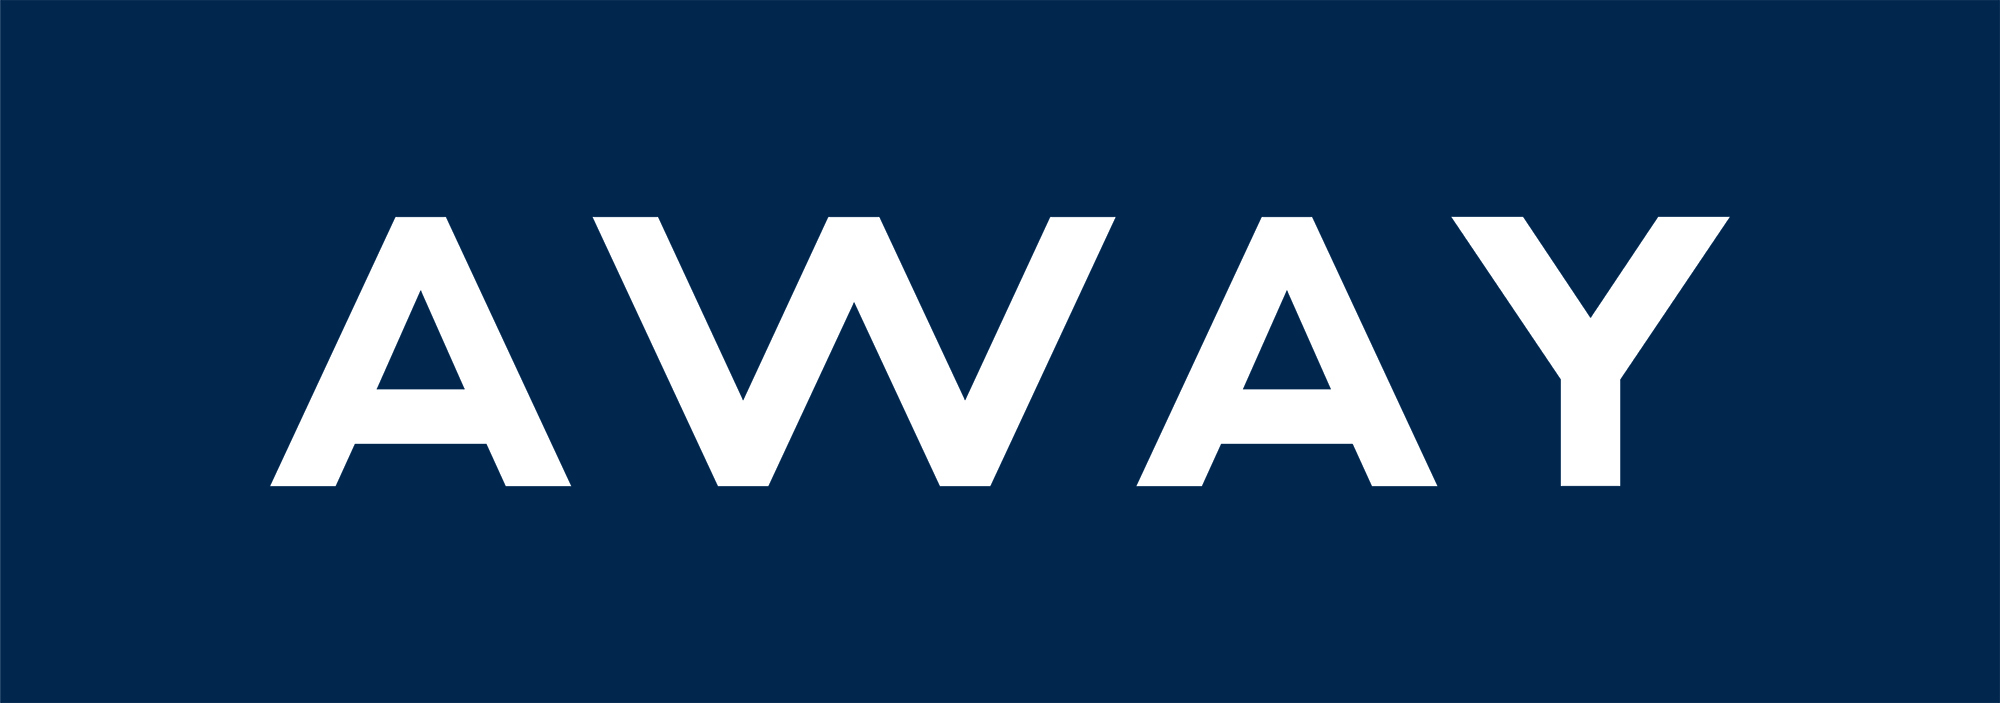 Away_logo.jpg